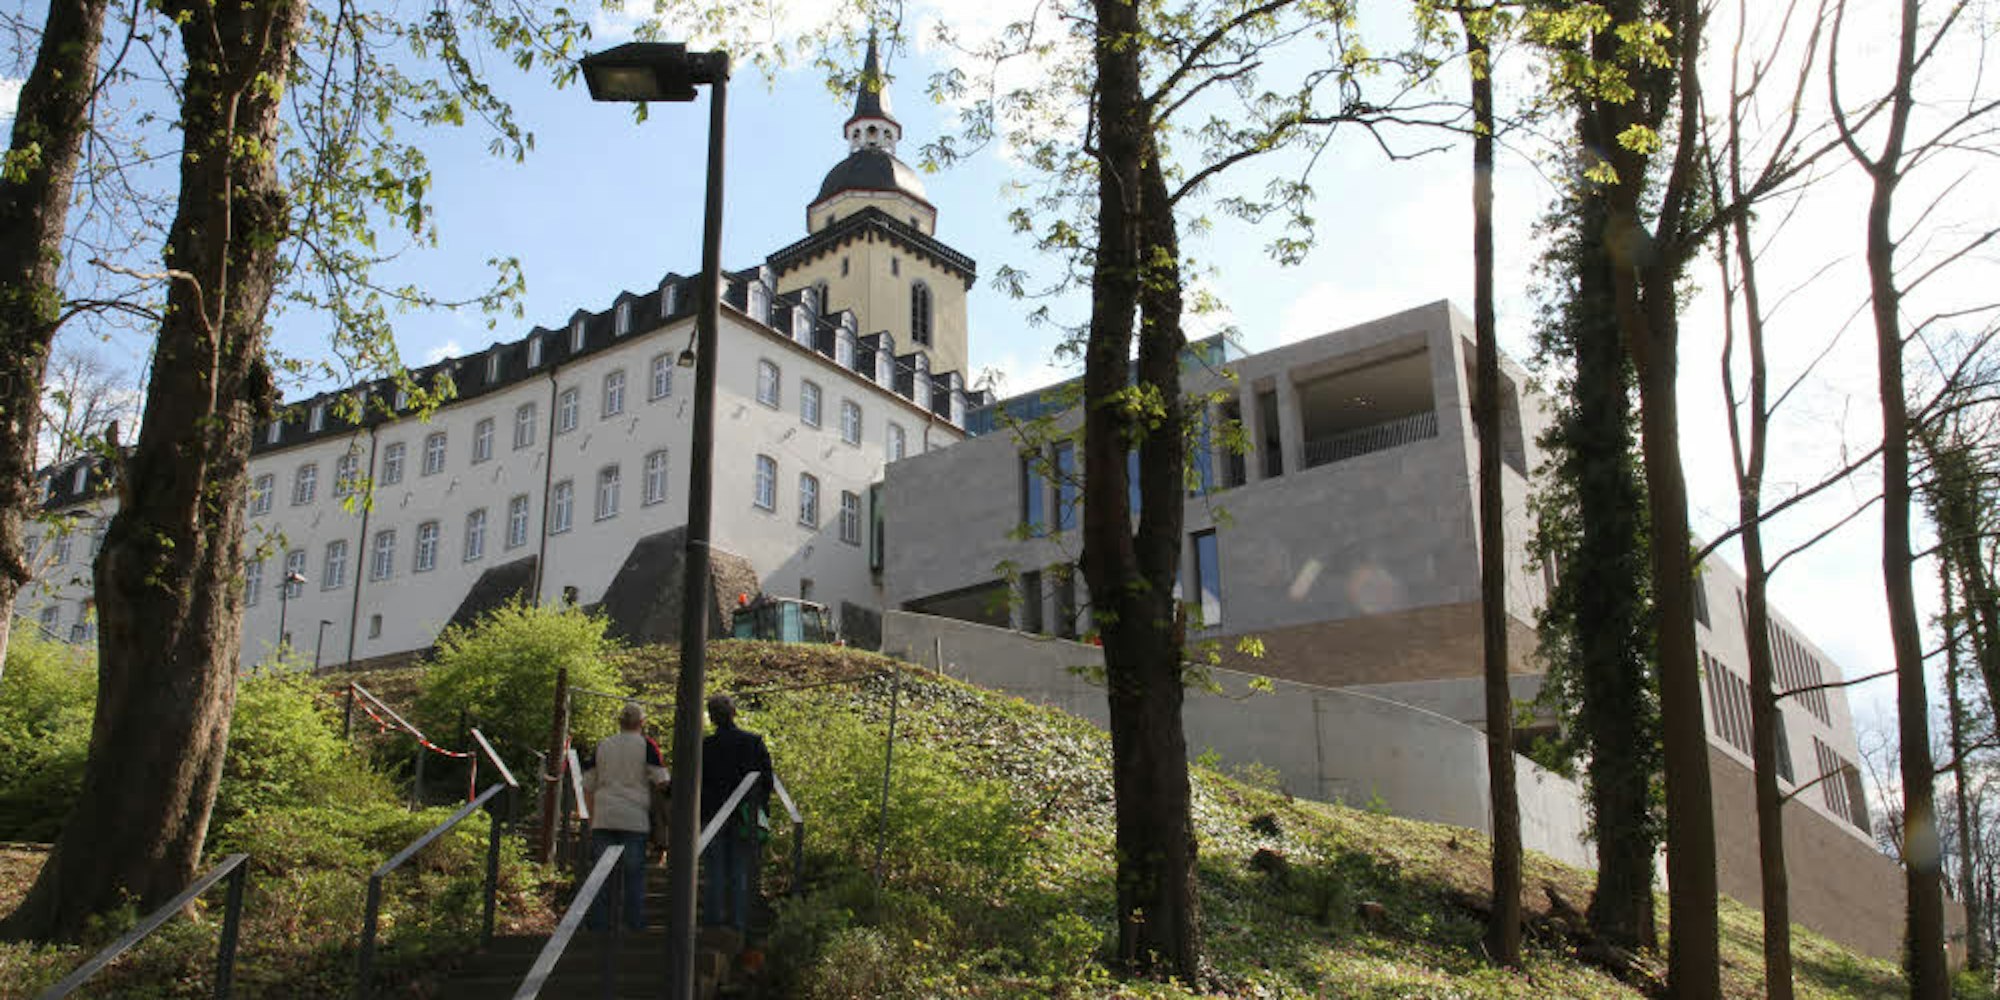 Der Aufstieg auf den Michaelsberg führt nicht mehr zum Kloster, sondern zum Katholisch-Sozialen Institut.